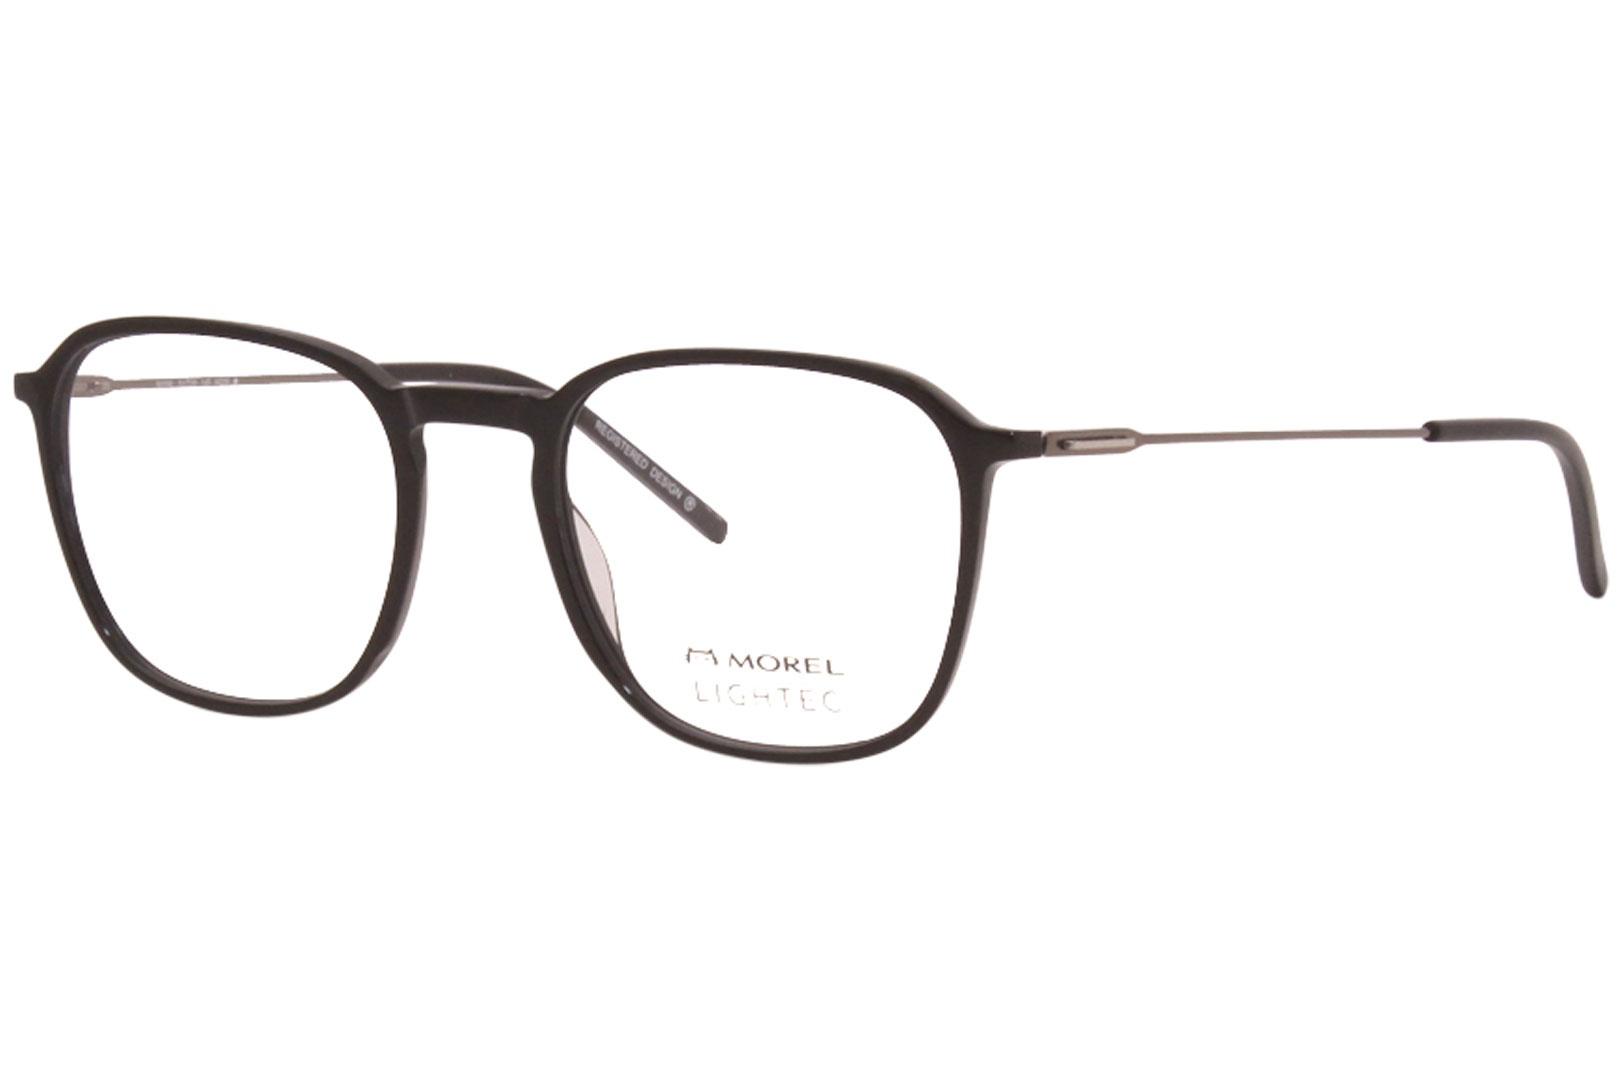 Morel Lightec 30228L Eyeglasses Men's Full Rim Round Optical Frame ...